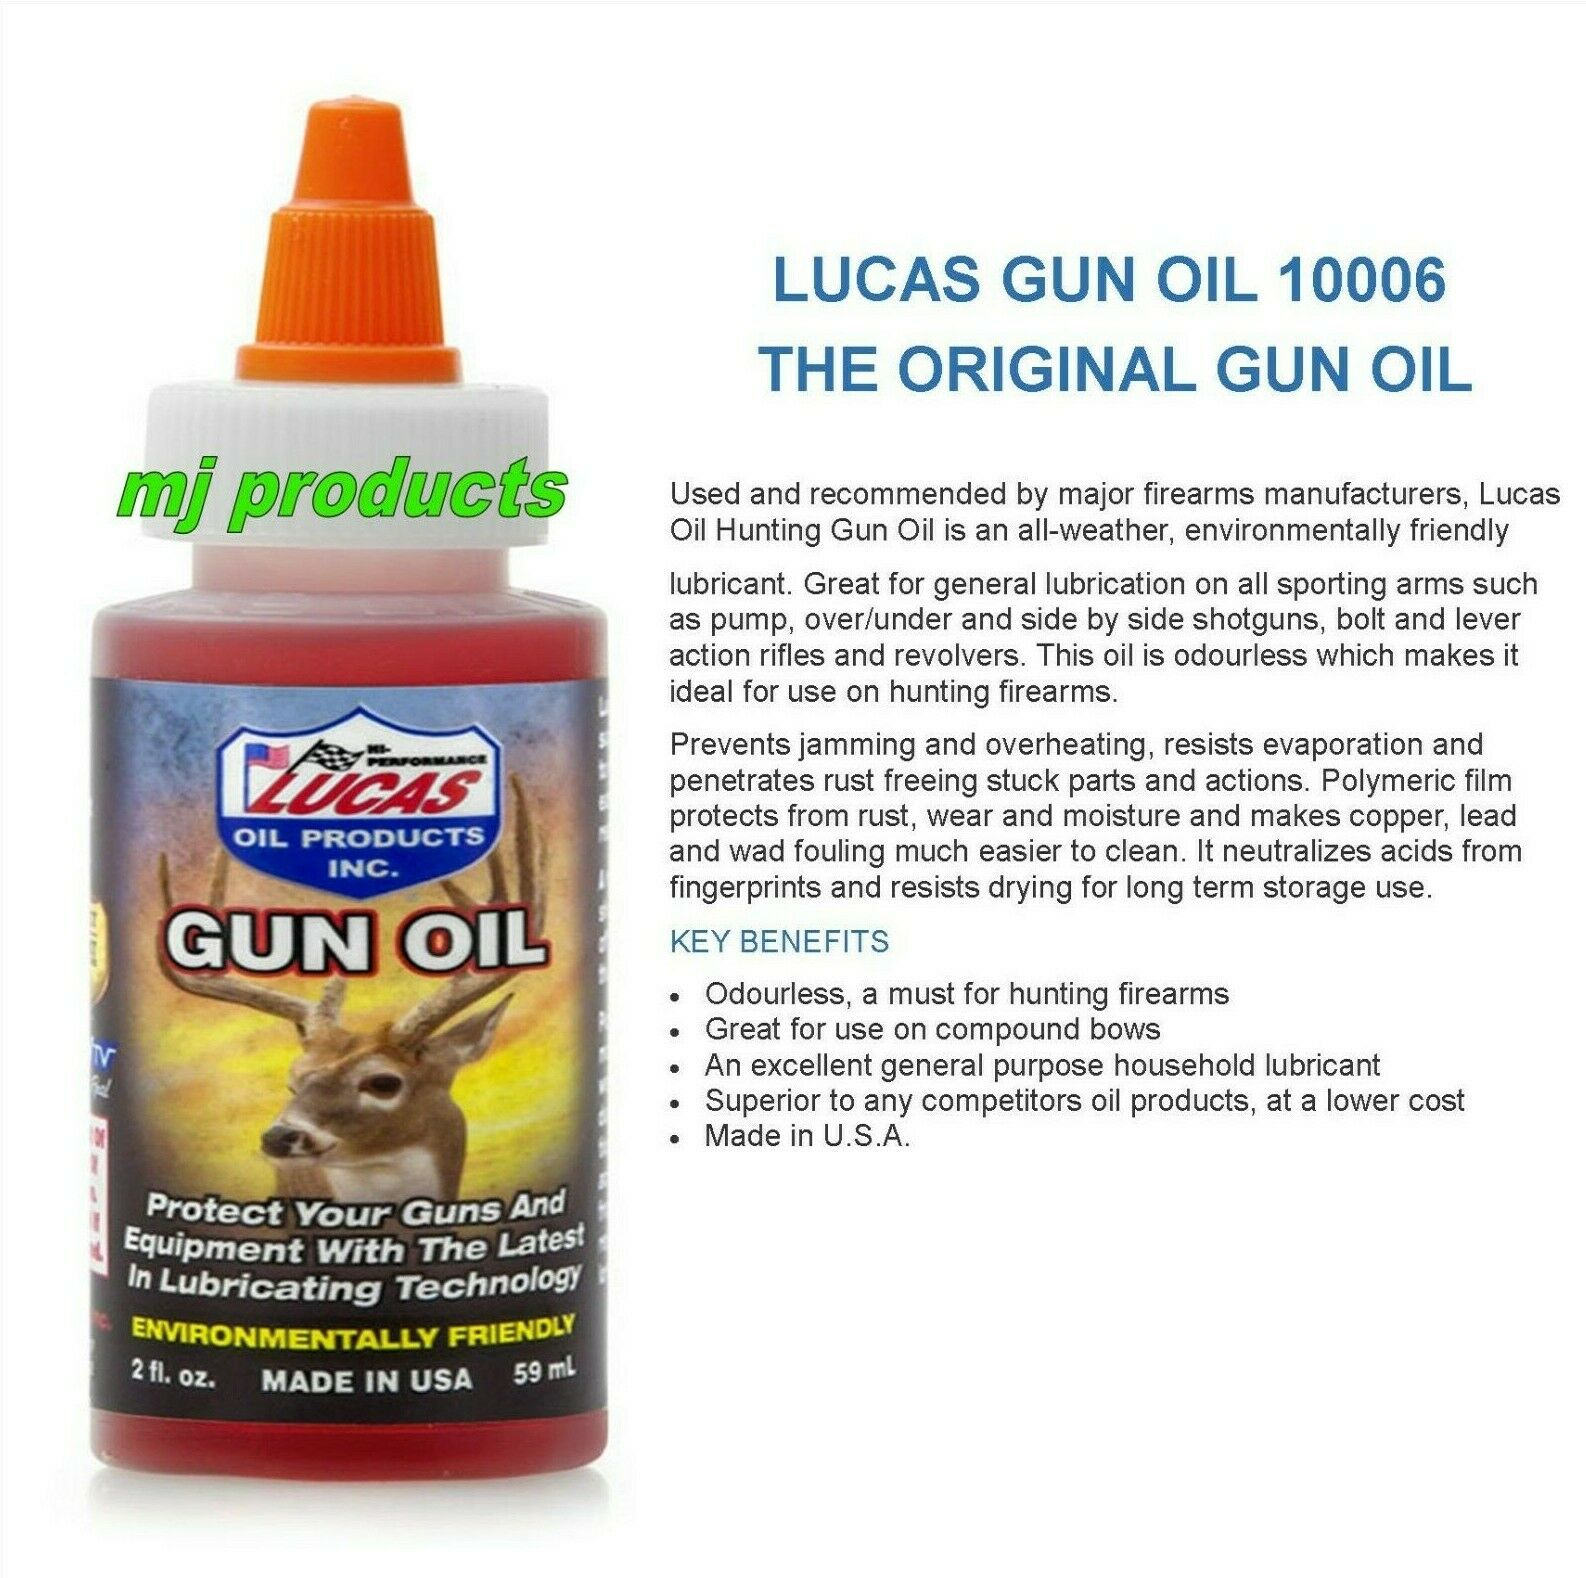 LUCAS OILS GUN OIL 10006 2 OUNCE BOTTLE - MJ Products, Solar Fans & Lights, Vehicle Accessories, Auto-Transmission Parts